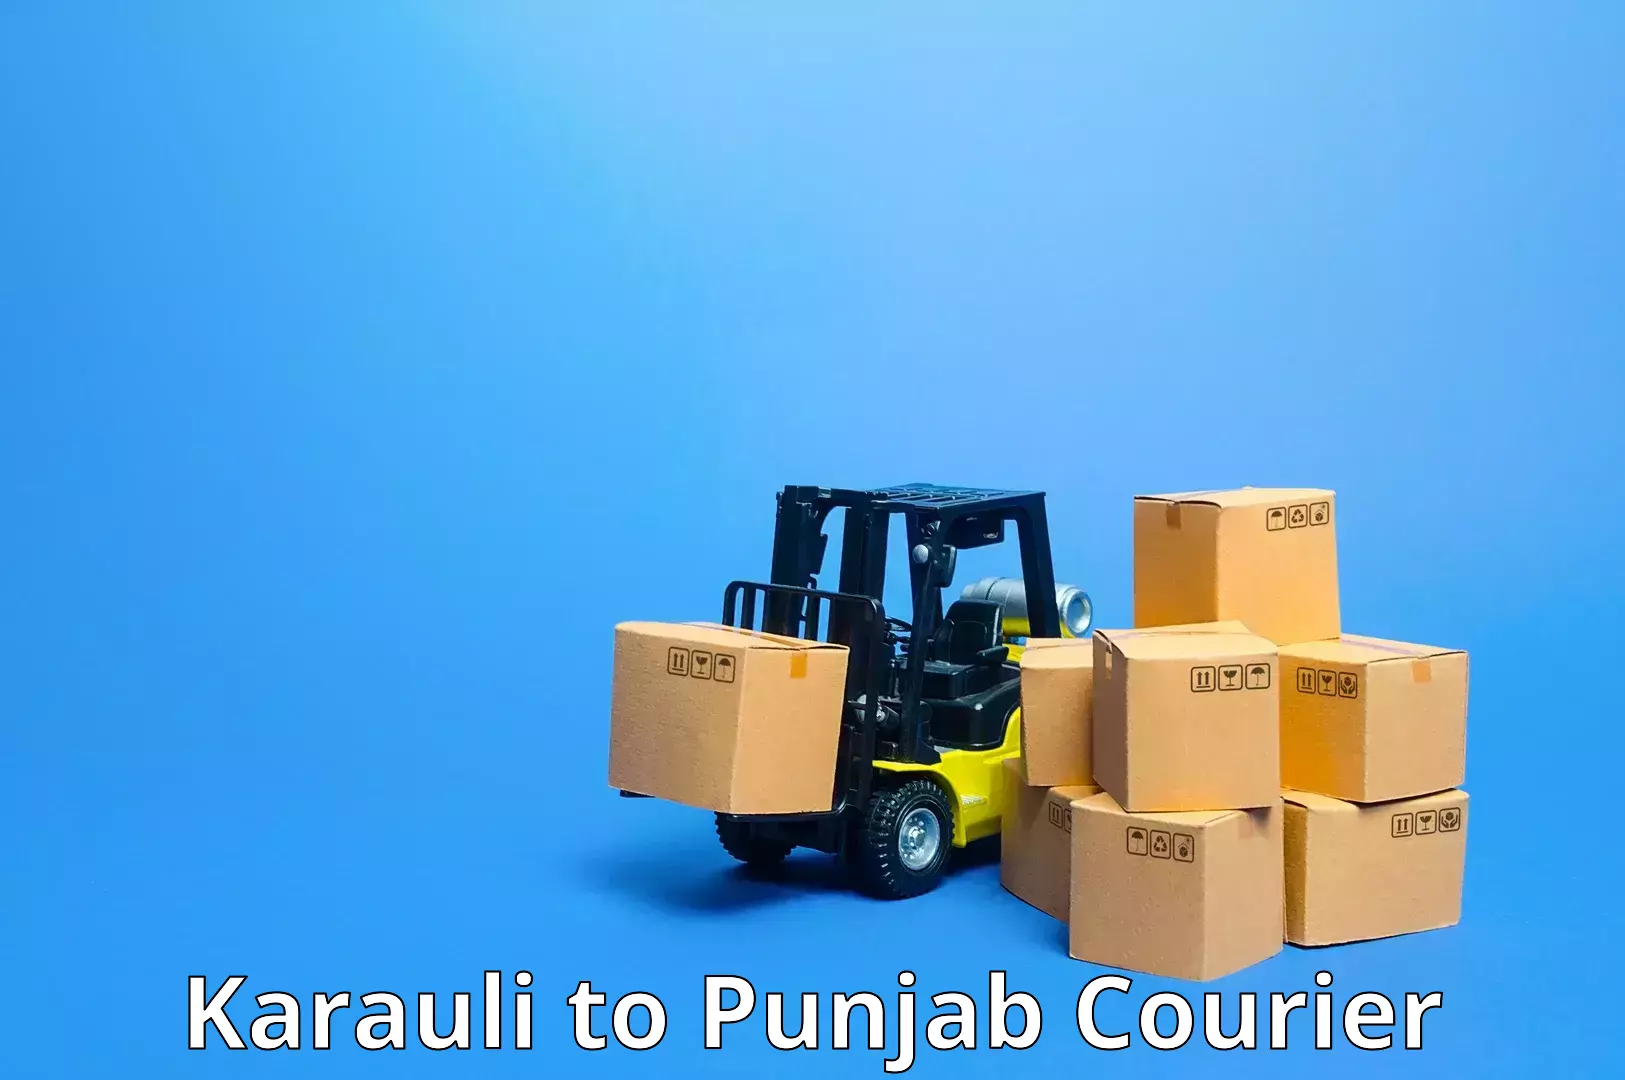 Holiday shipping services Karauli to Punjab